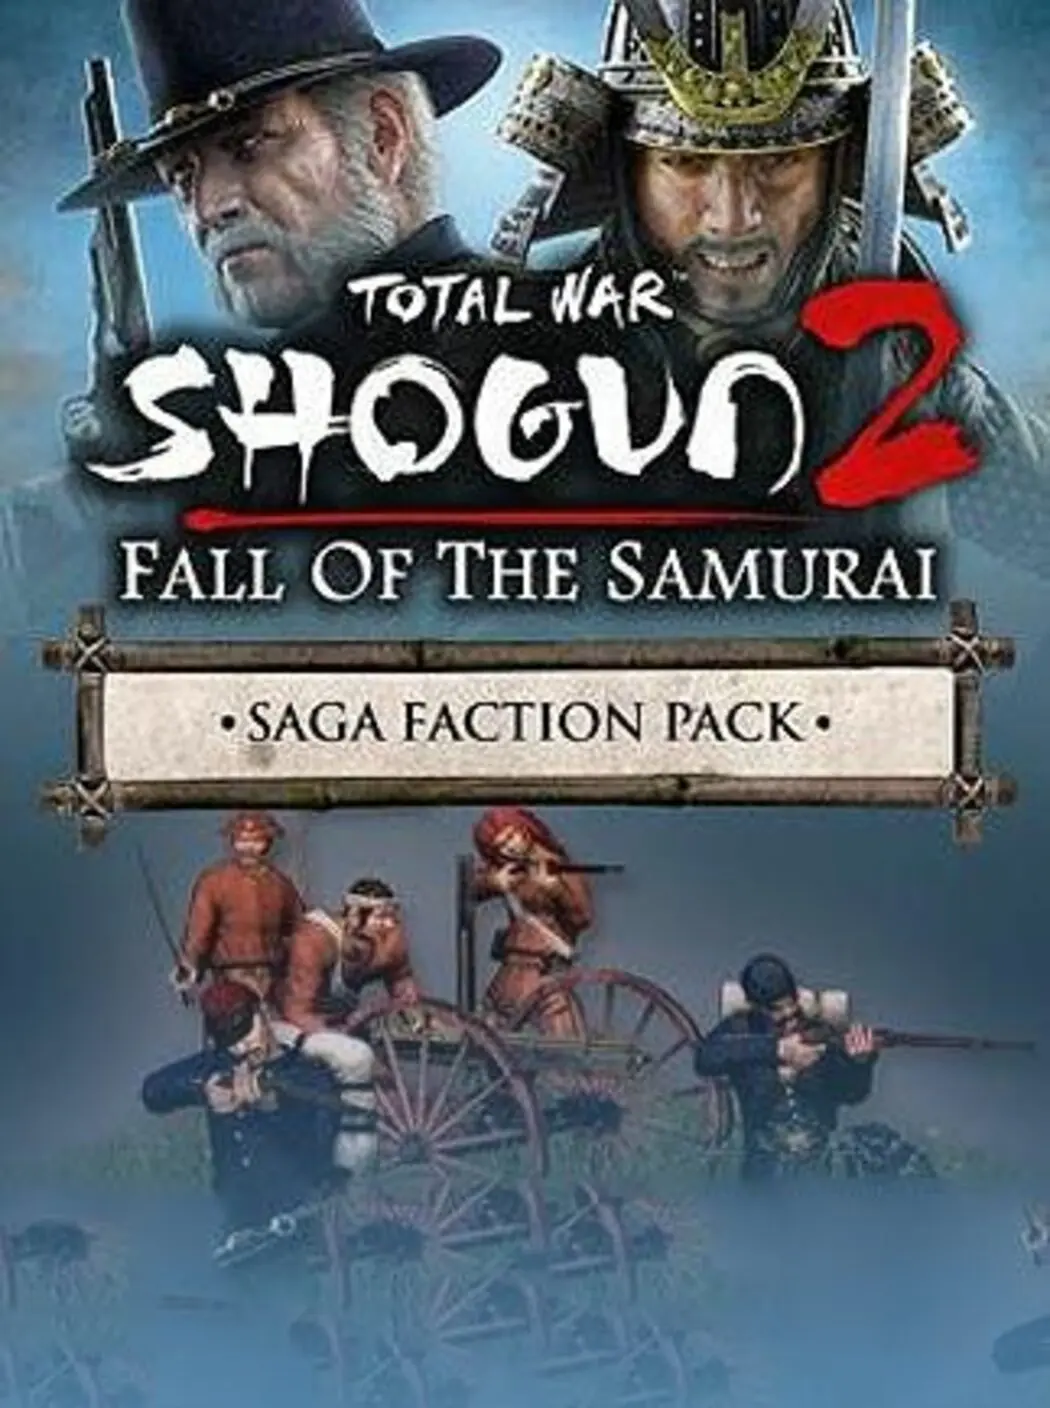 Total War Saga: FALL OF THE SAMURAI – The Saga Faction Pack DLC (EU) (PC / Mac / Linux) - Steam - Digital Code